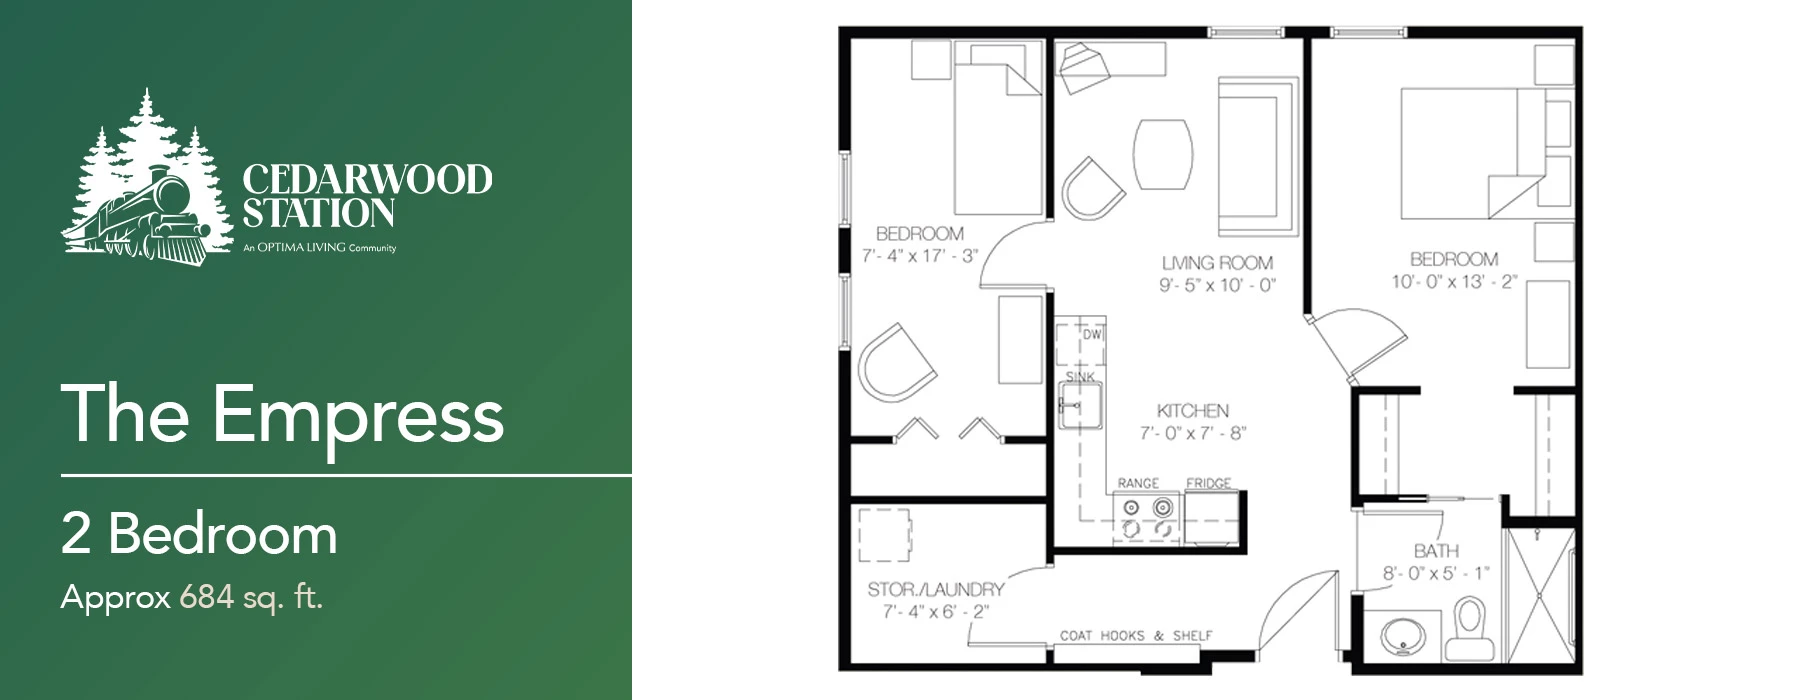 The Empress 2 bedroom floor plan